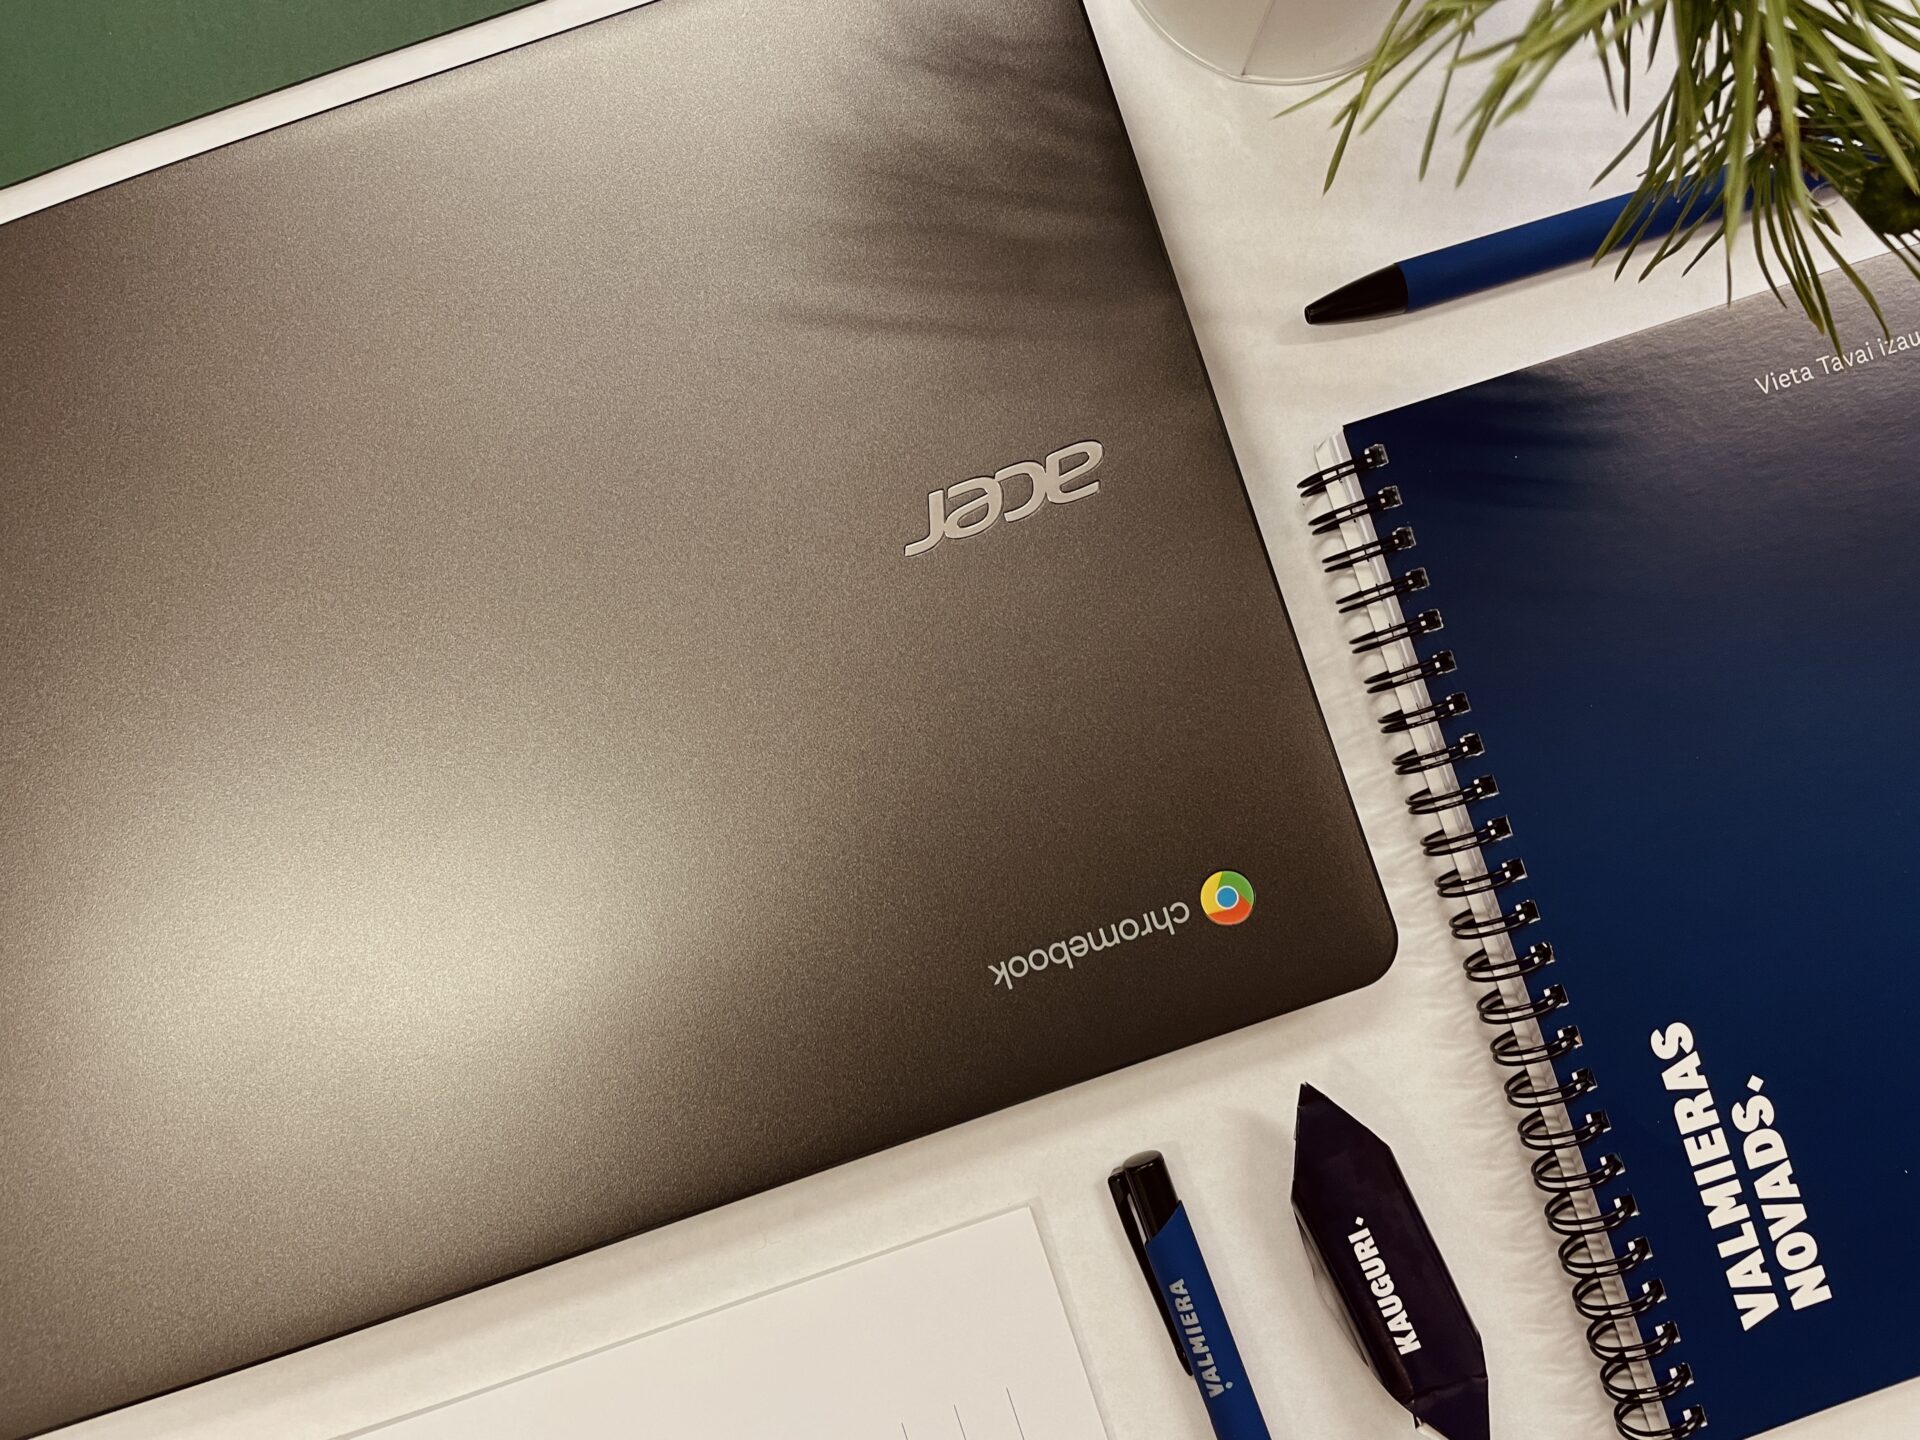 Valmieras novada pašvaldība ir saņēmusi pirmo datortehnikas piegādi – 71 Acer Chromebook 314 portatīvo datoru